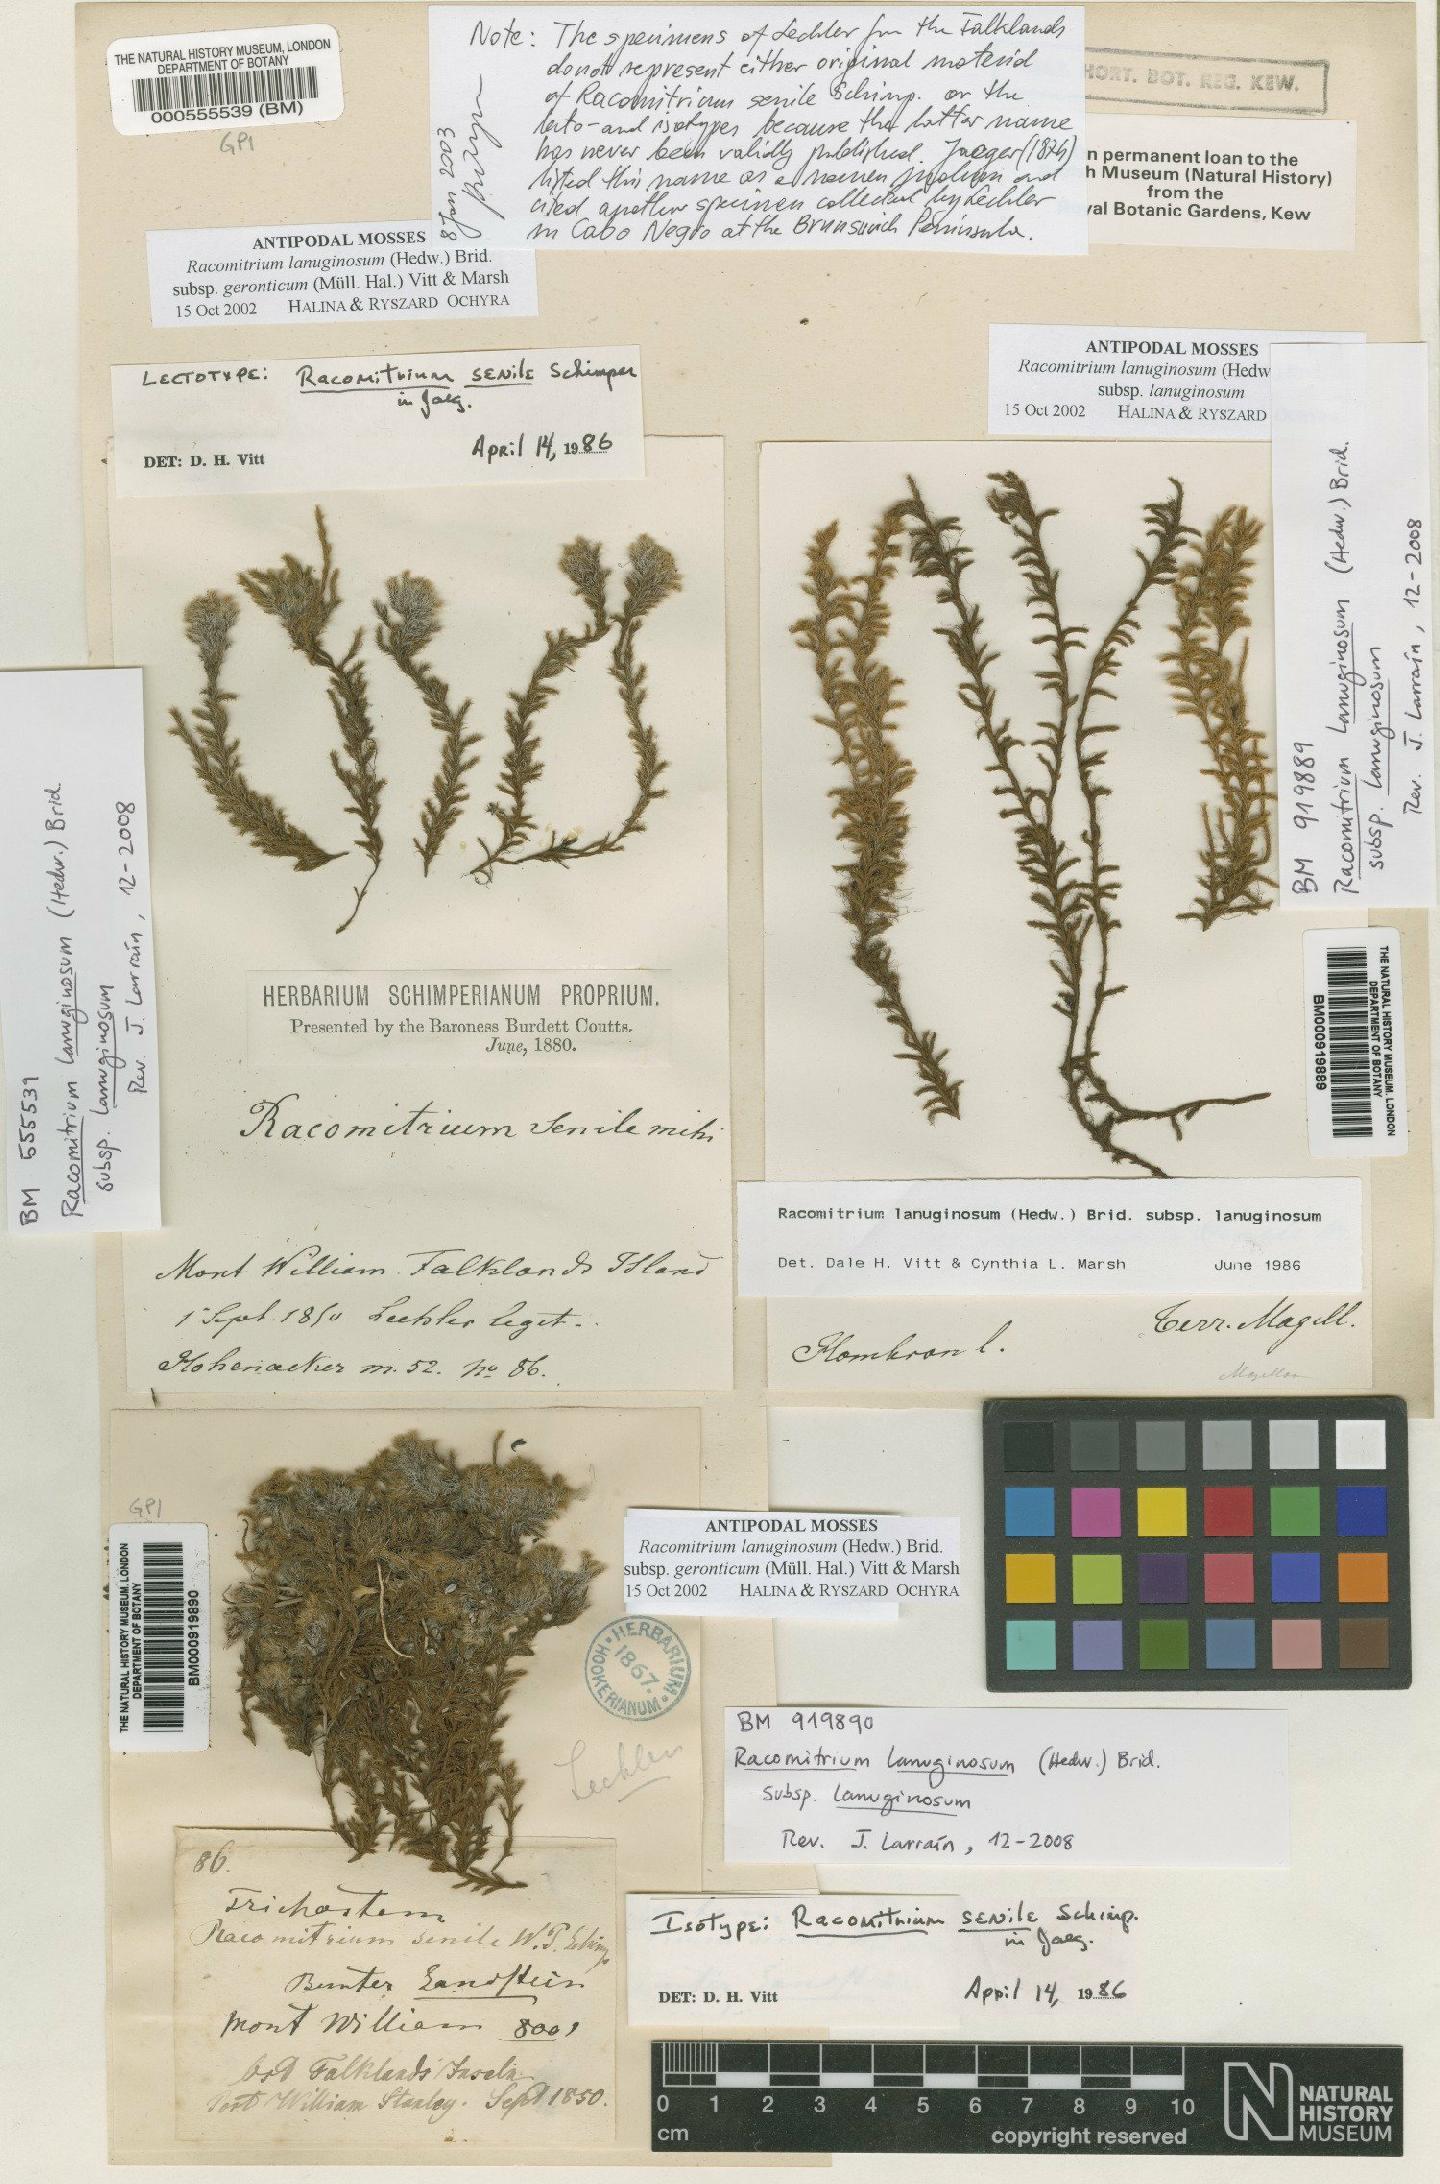 To NHMUK collection (Racomitrium lanuginosum (Hedw.) Brid.; Lectotype; NHMUK:ecatalogue:4962496)